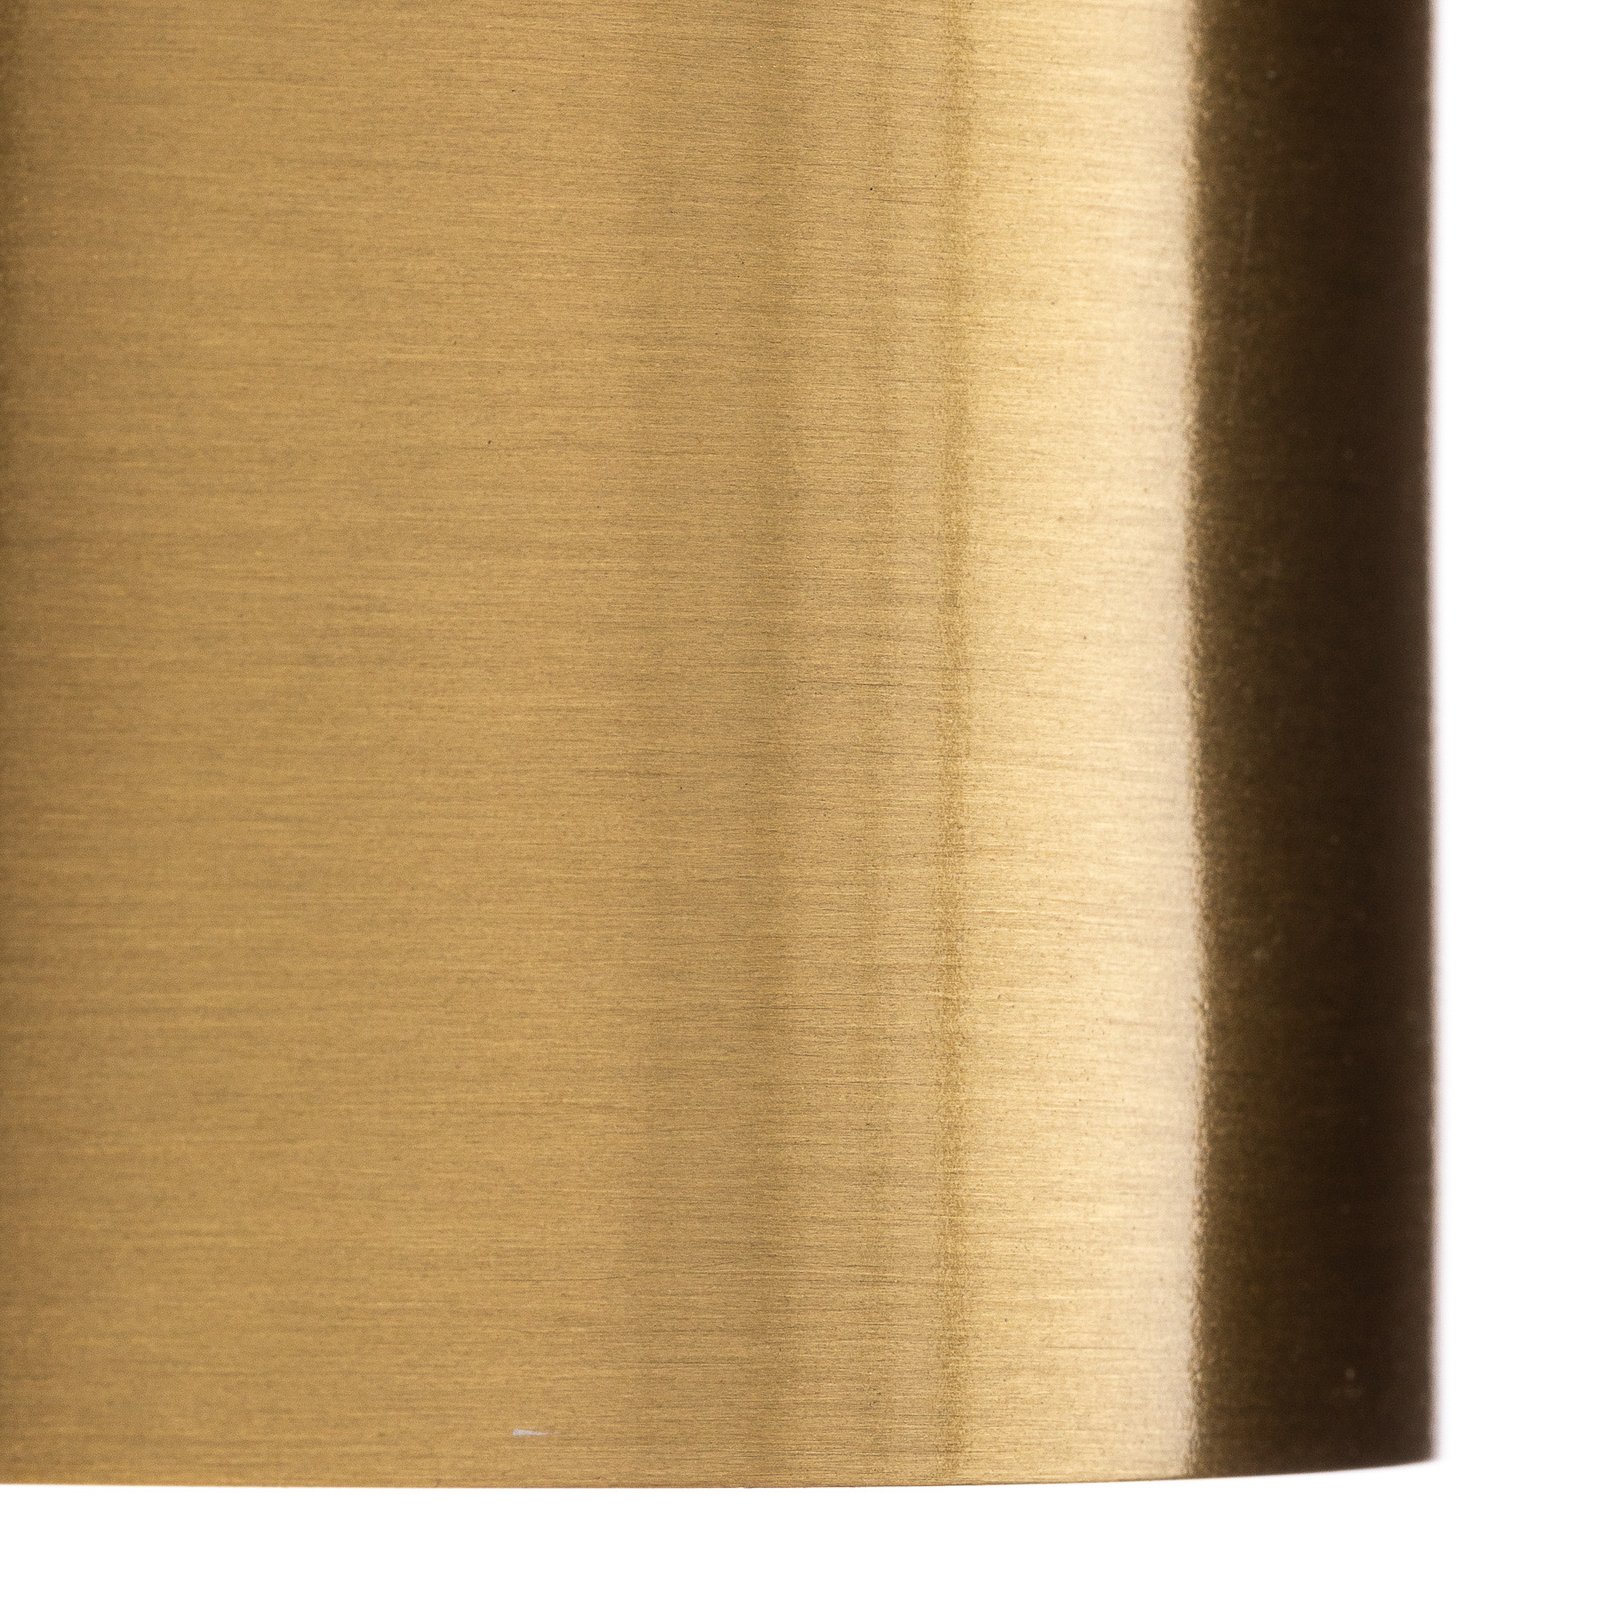 Lindby LED-Strahler Nivoria, 11 x 6,5 cm, gold, 4er-Set